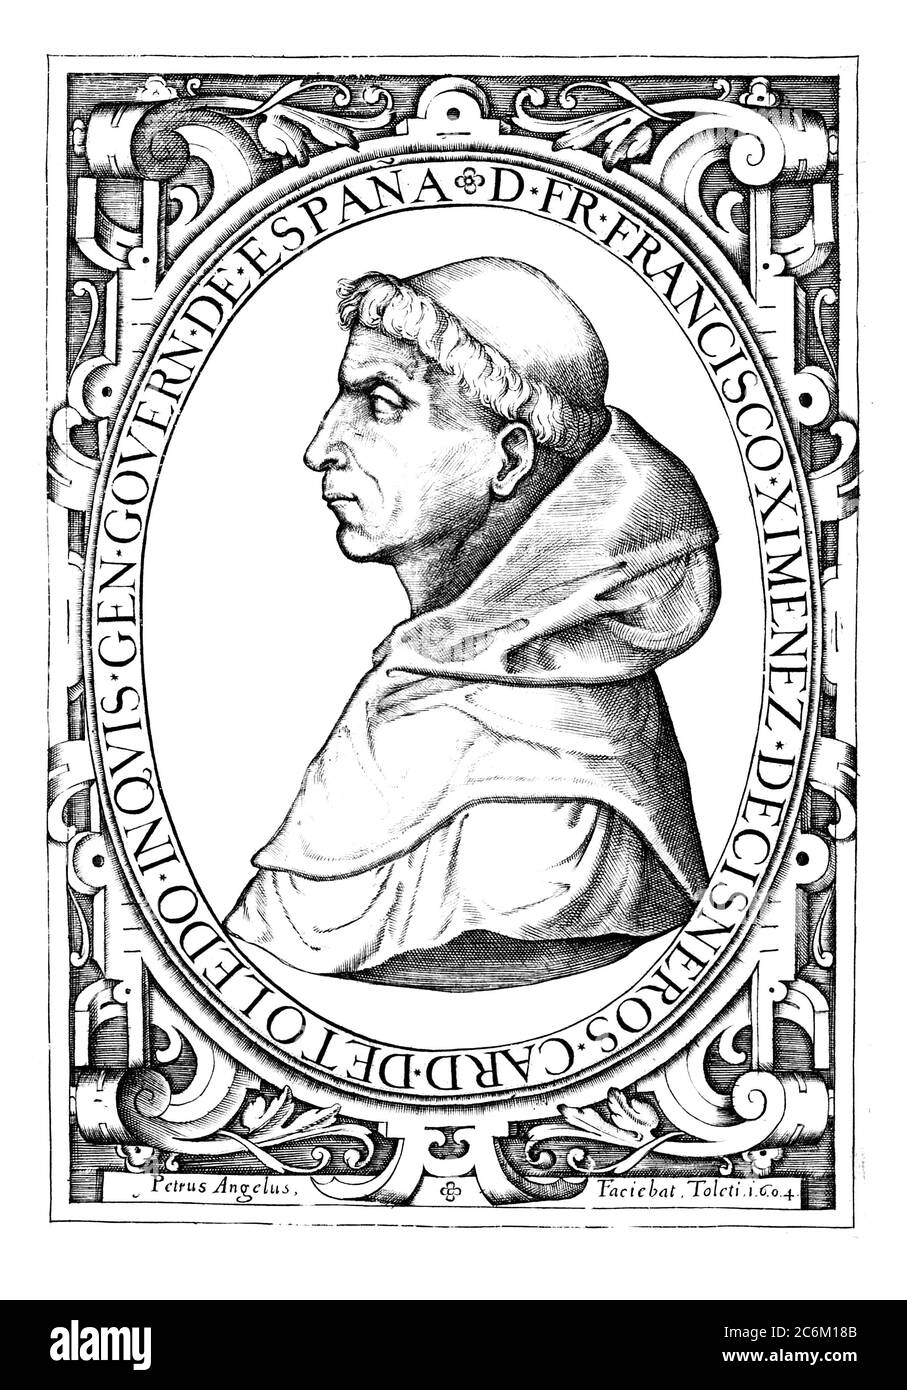 1510 c, SPAIN : The spanish Cardinal FRANCISCO JIMENEZ ( XIMENES ) DE CISNEROS ( 1436 - 1517 ), Roman Catholic Statesman  , Regent of Spain and Grand Inquisitor . Portrait engraved  by Petrus Angelusand pubblished in Toledo , 1604 . - RELIGIONE CATTOLICA - ARCIVESCOVO - CARDINALE - CATHOLIC RELIGION - CLERICALI - CLERICALE - ALTO PRELATO - VATICANO - VATICAN - SPAGNA - SANTA INQUISIZIONE - INQUISITORE - FRANCESCANO - ORDINE DEI FRANCESCANI - illustrazione - illustration - incisione - POLITICO- POLITICIAN - POLITICA - POLITIC - Reggente del Regno di Castiglia - Castilla --- Archivio GBB Stock Photo